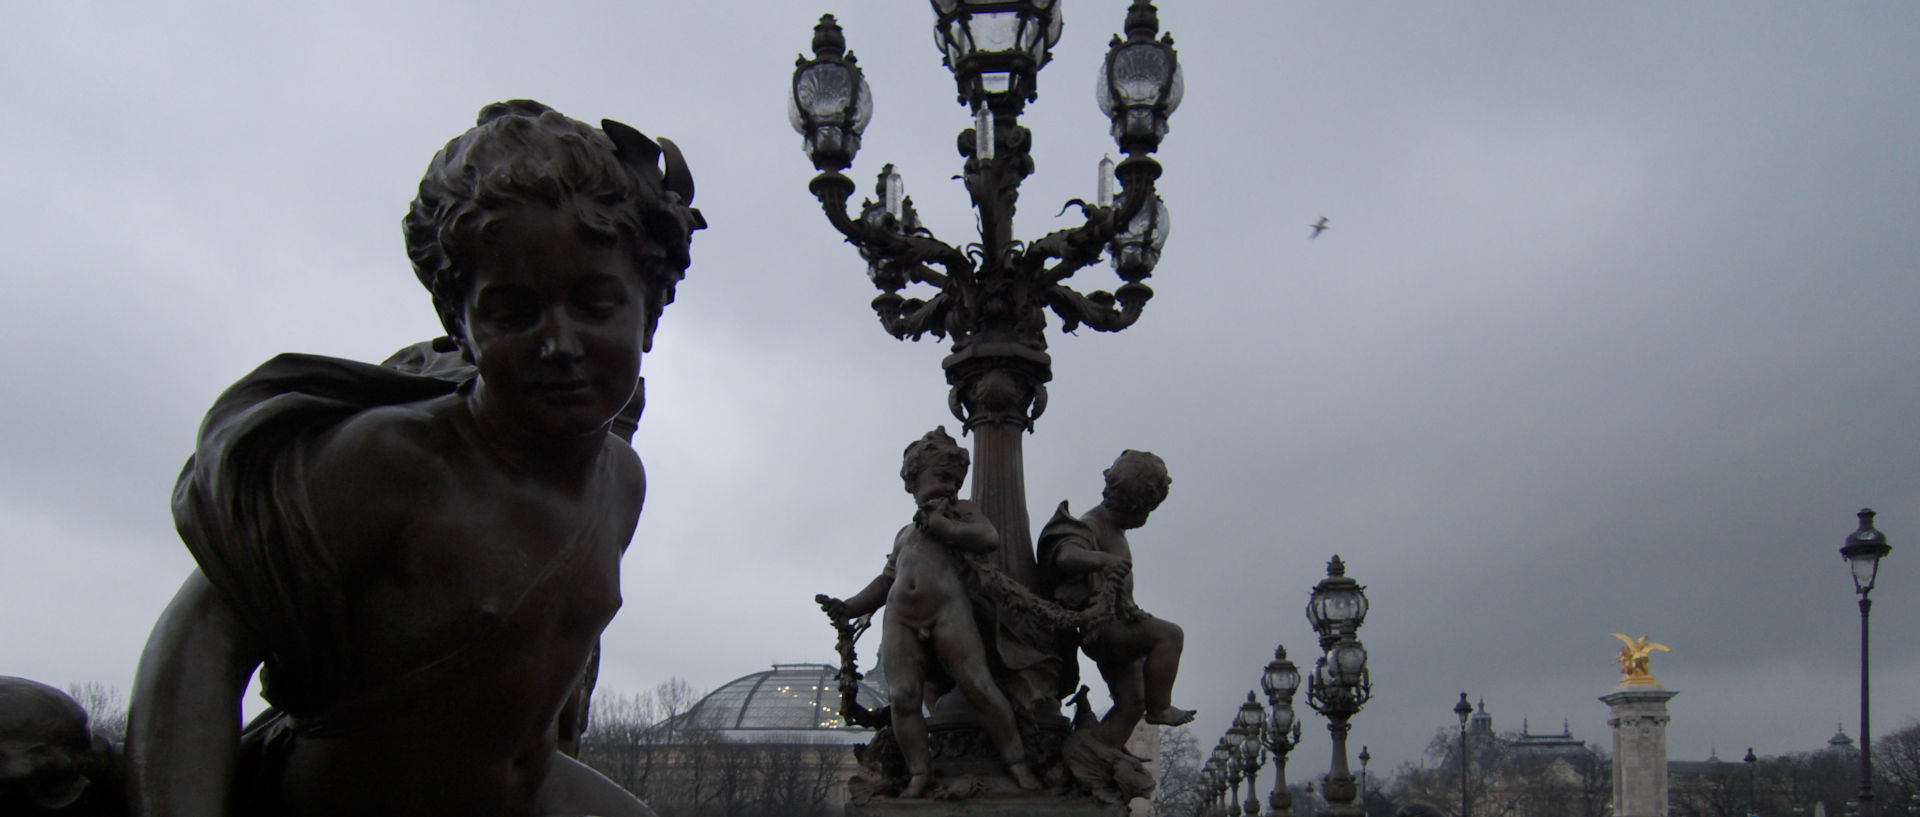 Mercredi 18 février 2009, 8:27, pont Alexandre III, à Paris.